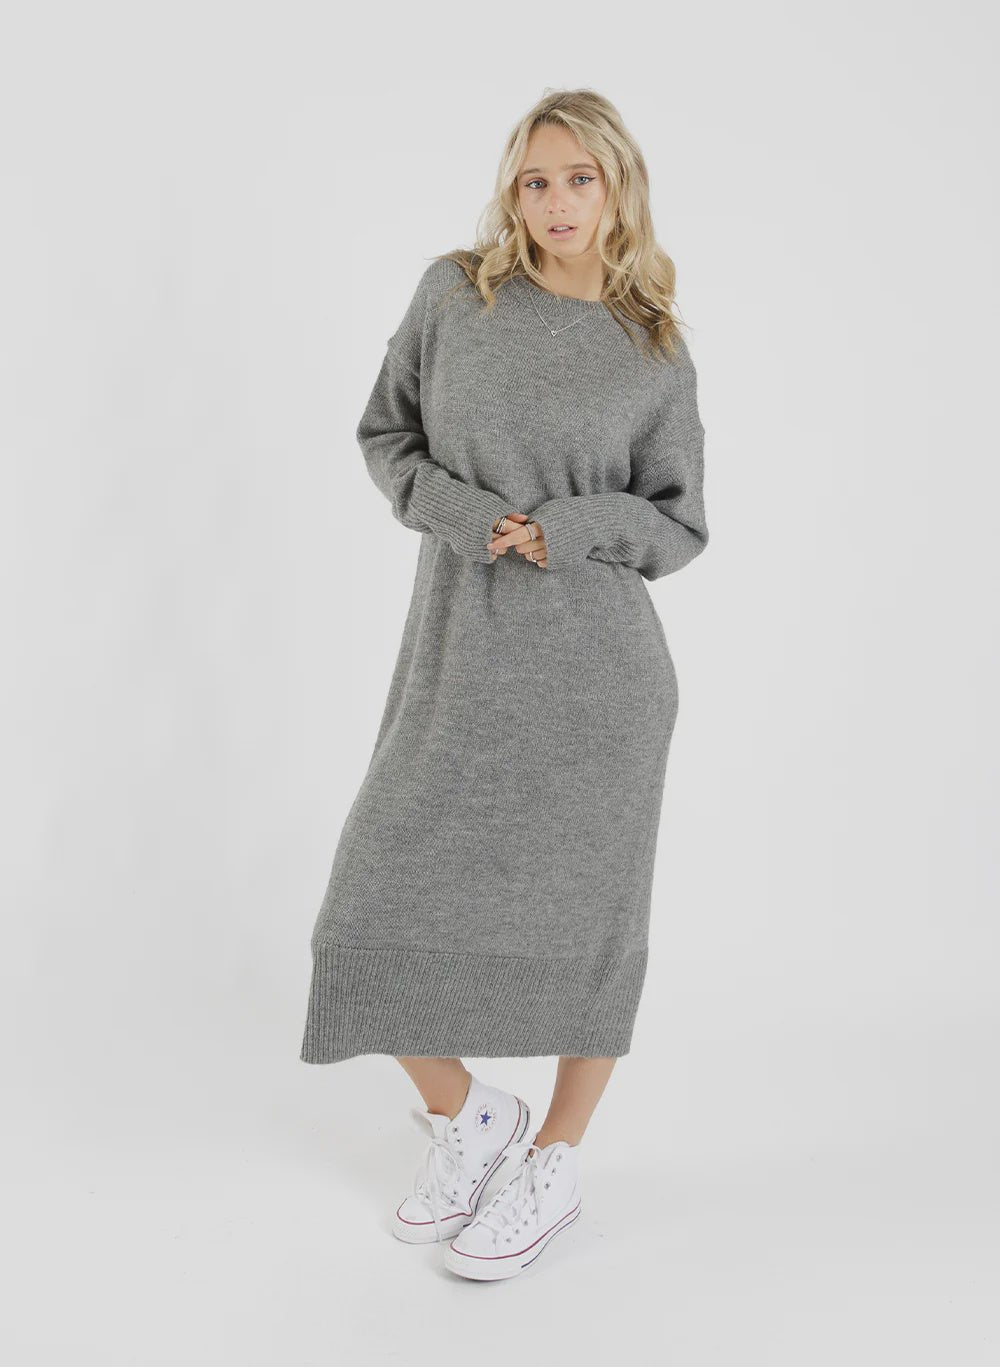 Warmest Dress - Dark Grey - Chillis & More NZ